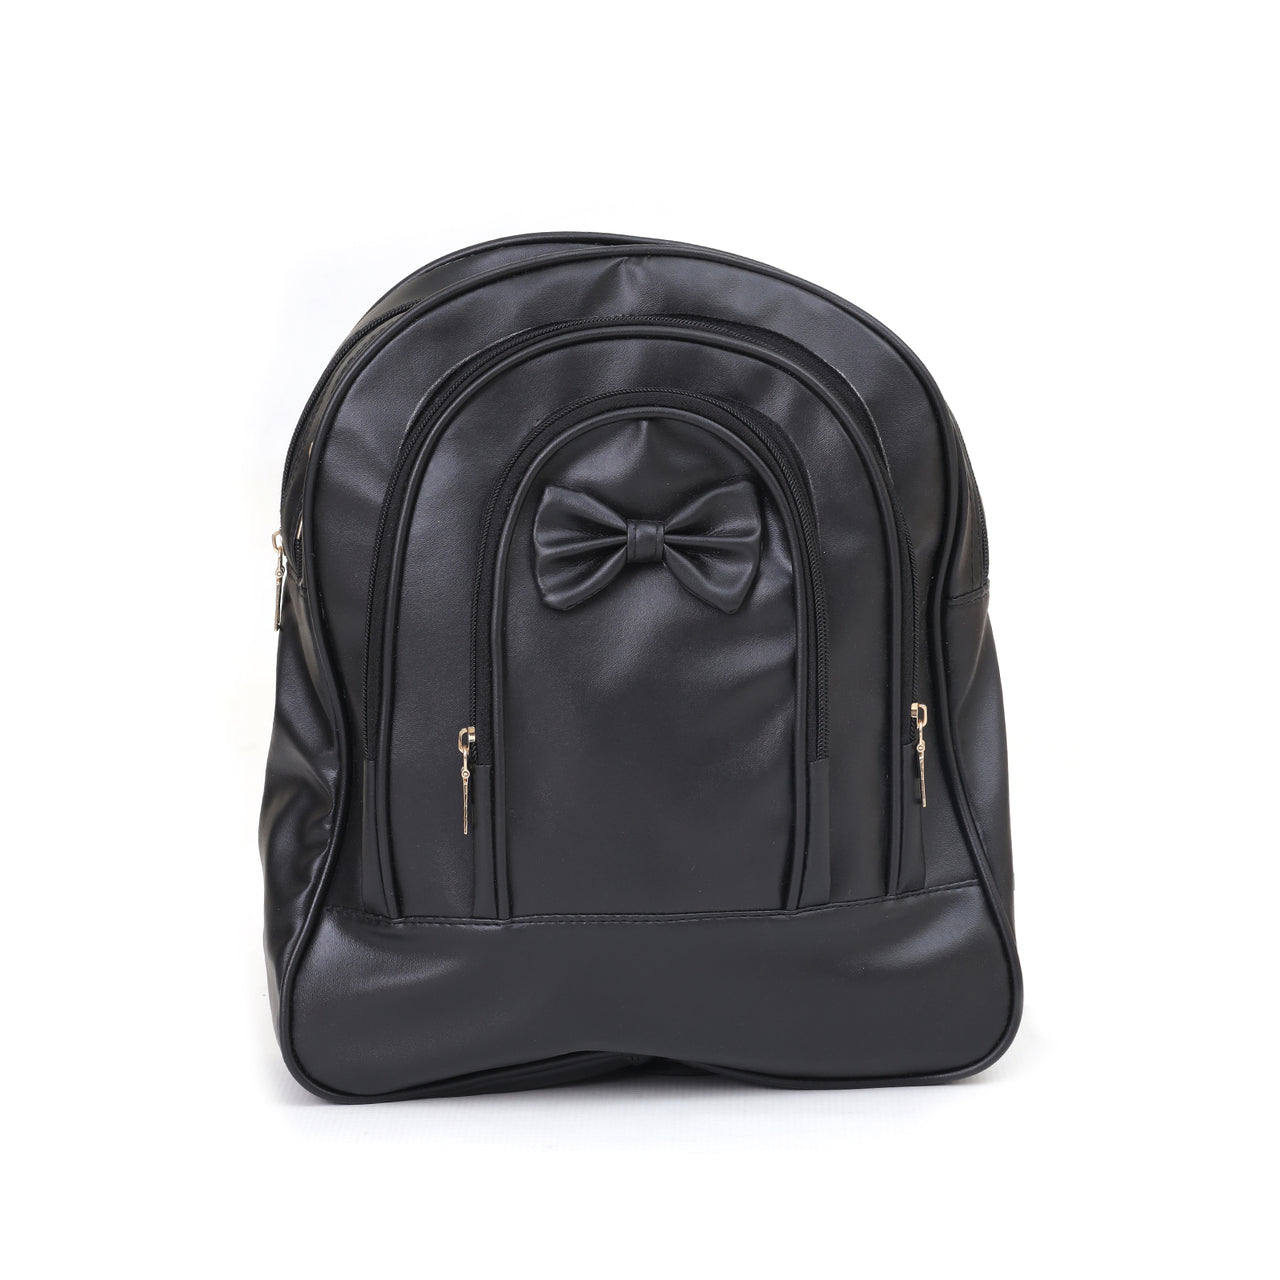 B-EK-0300883- School Bag